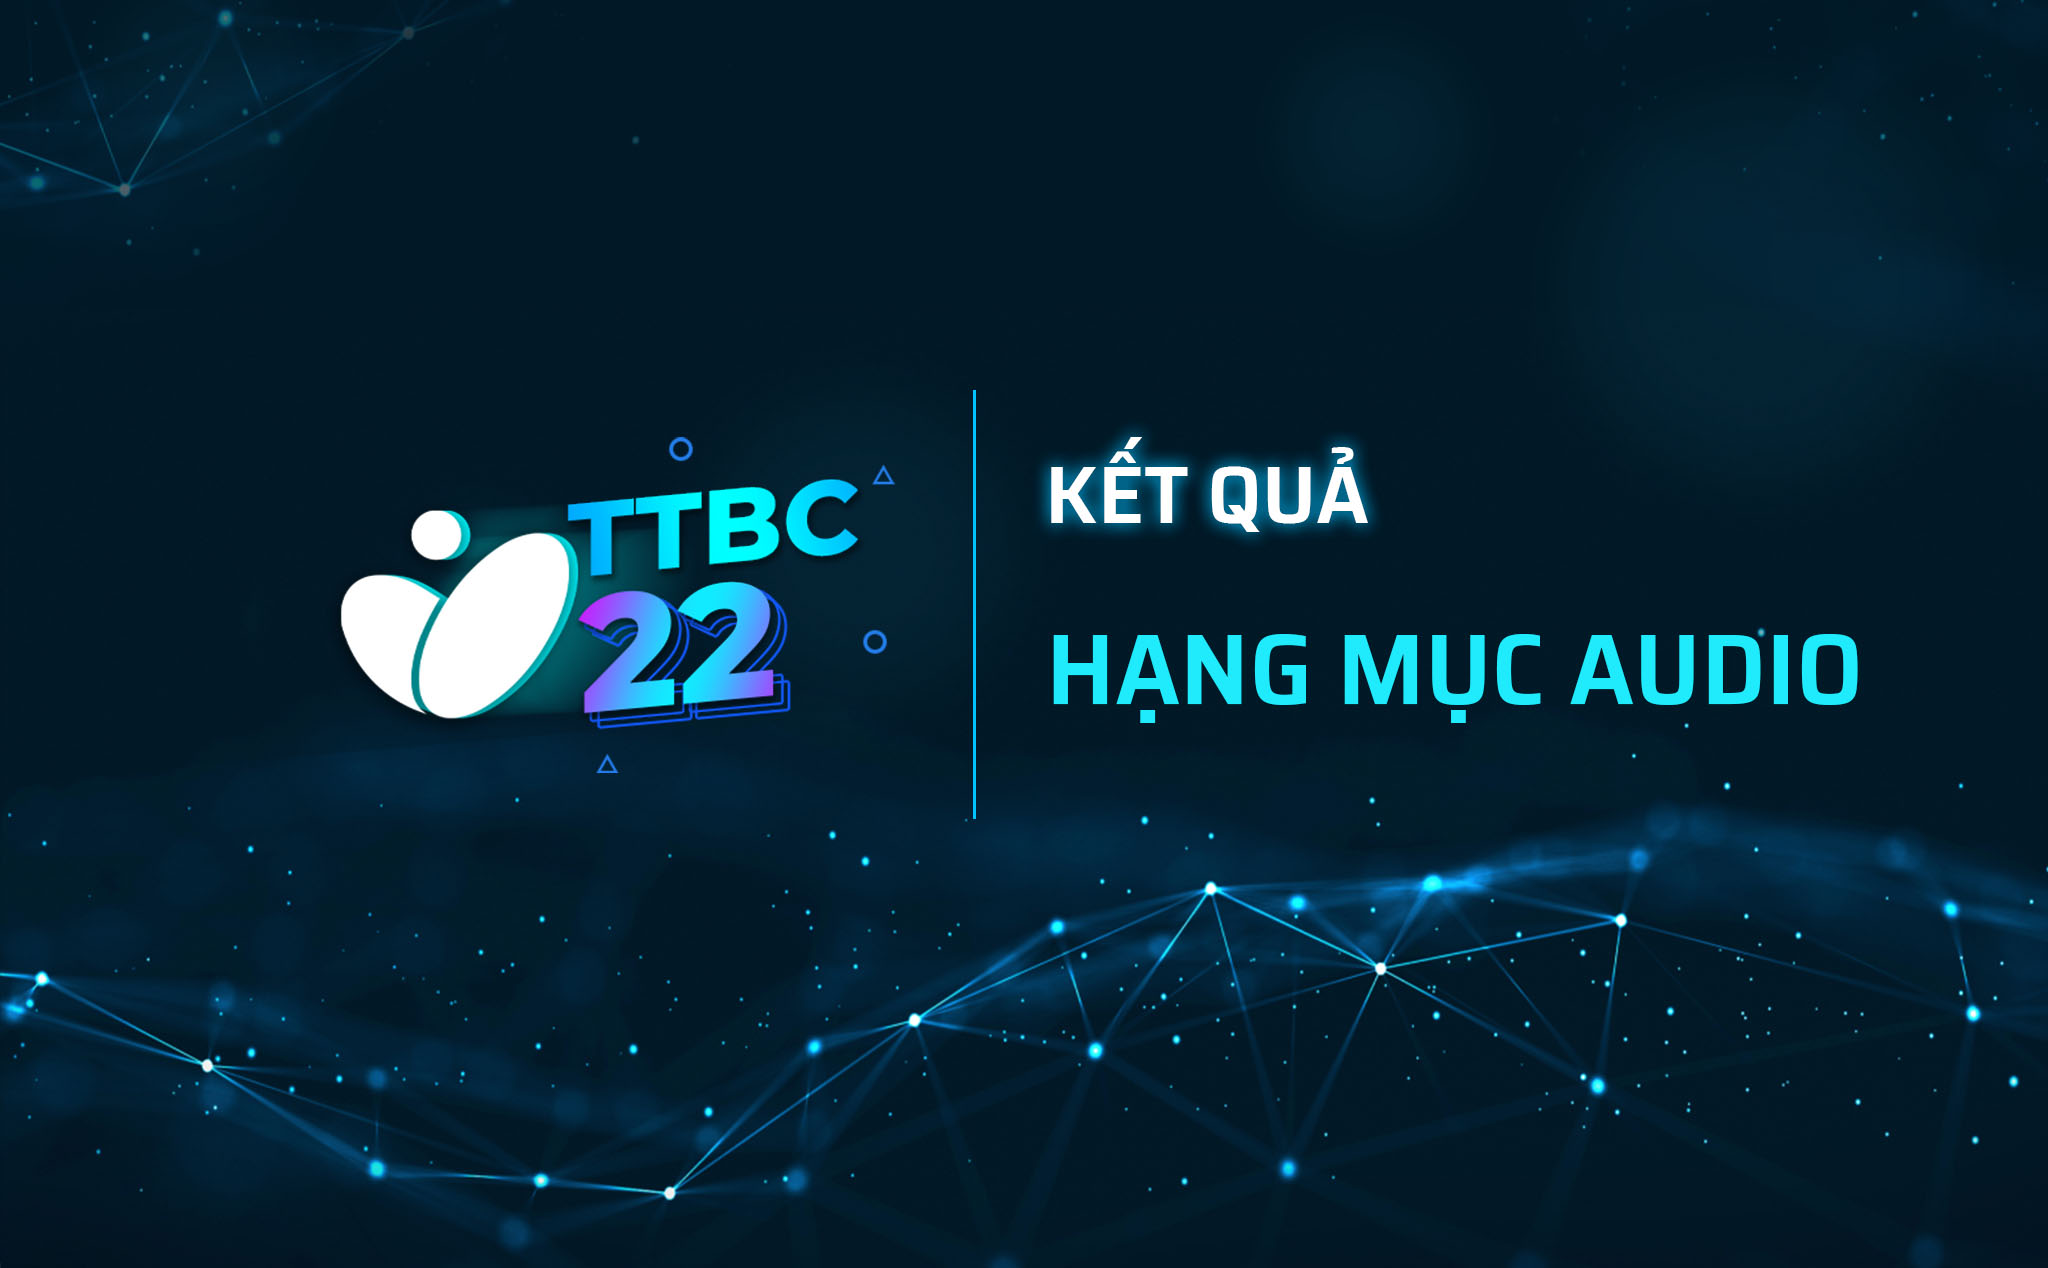 TTBC22: Kết quả bình chọn hạng mục Audio